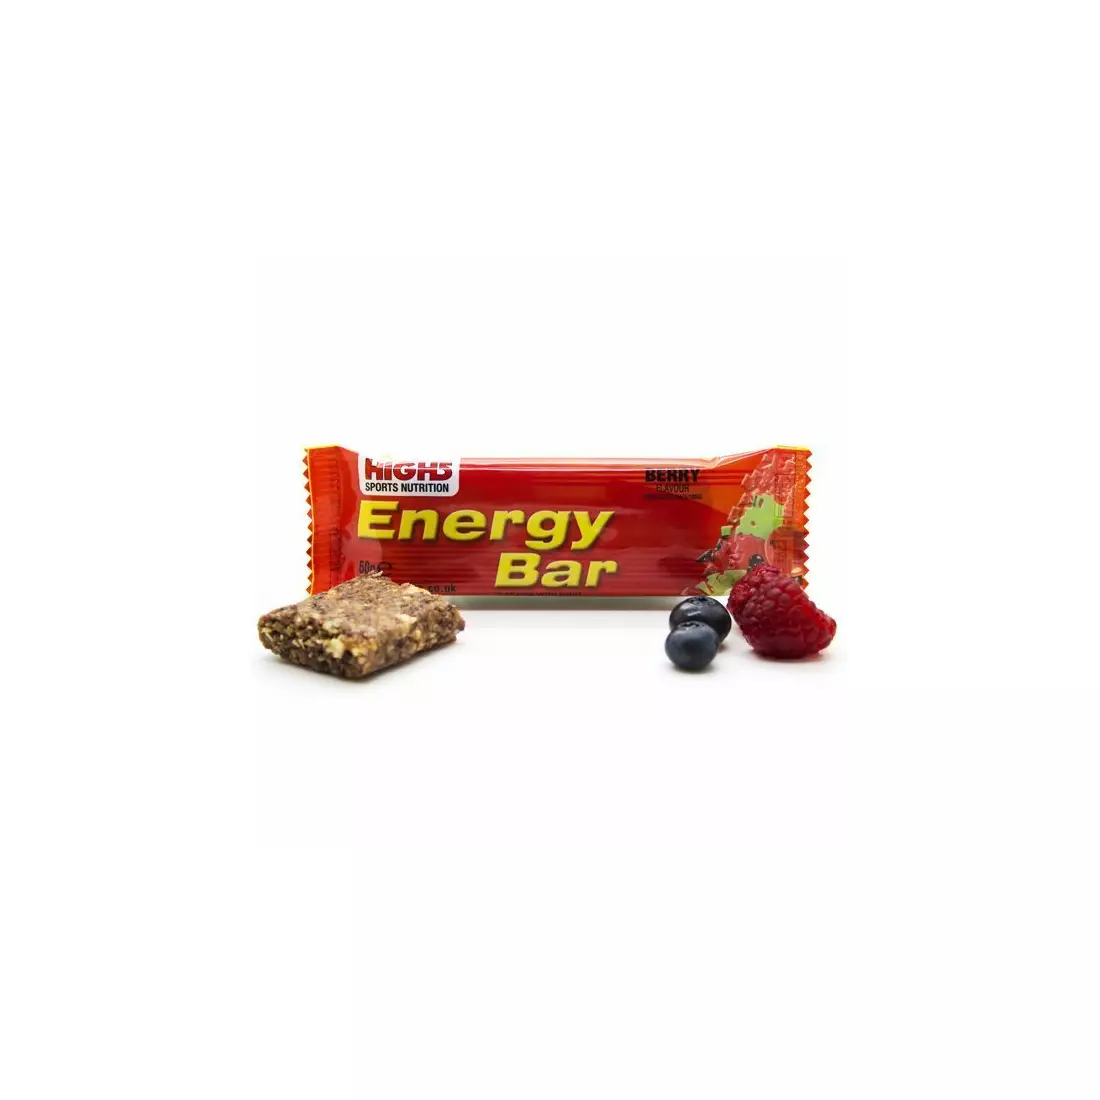 HIGH5 Energy Bar, capacity 25 g, flavor: BLUEBERRY